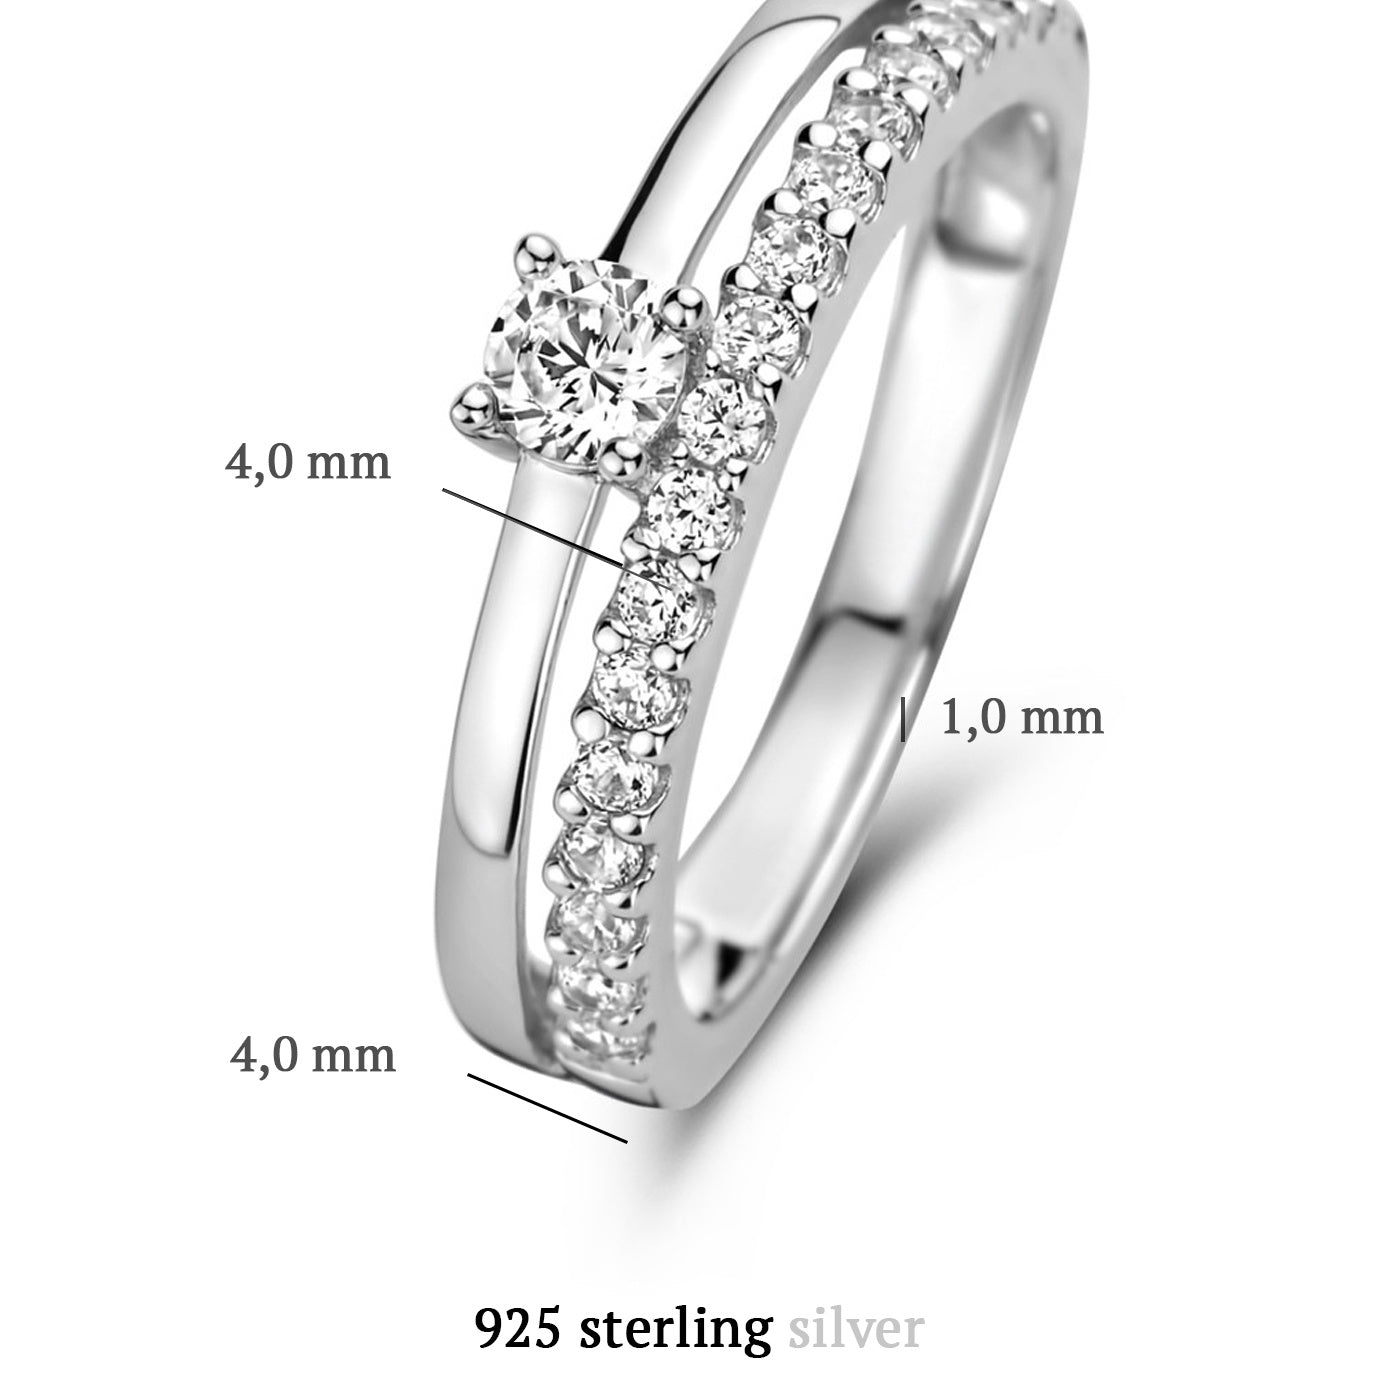 Ponte Vecchio Uffizi 925 Sterling Silber Ring mit Zirkonia Steinen